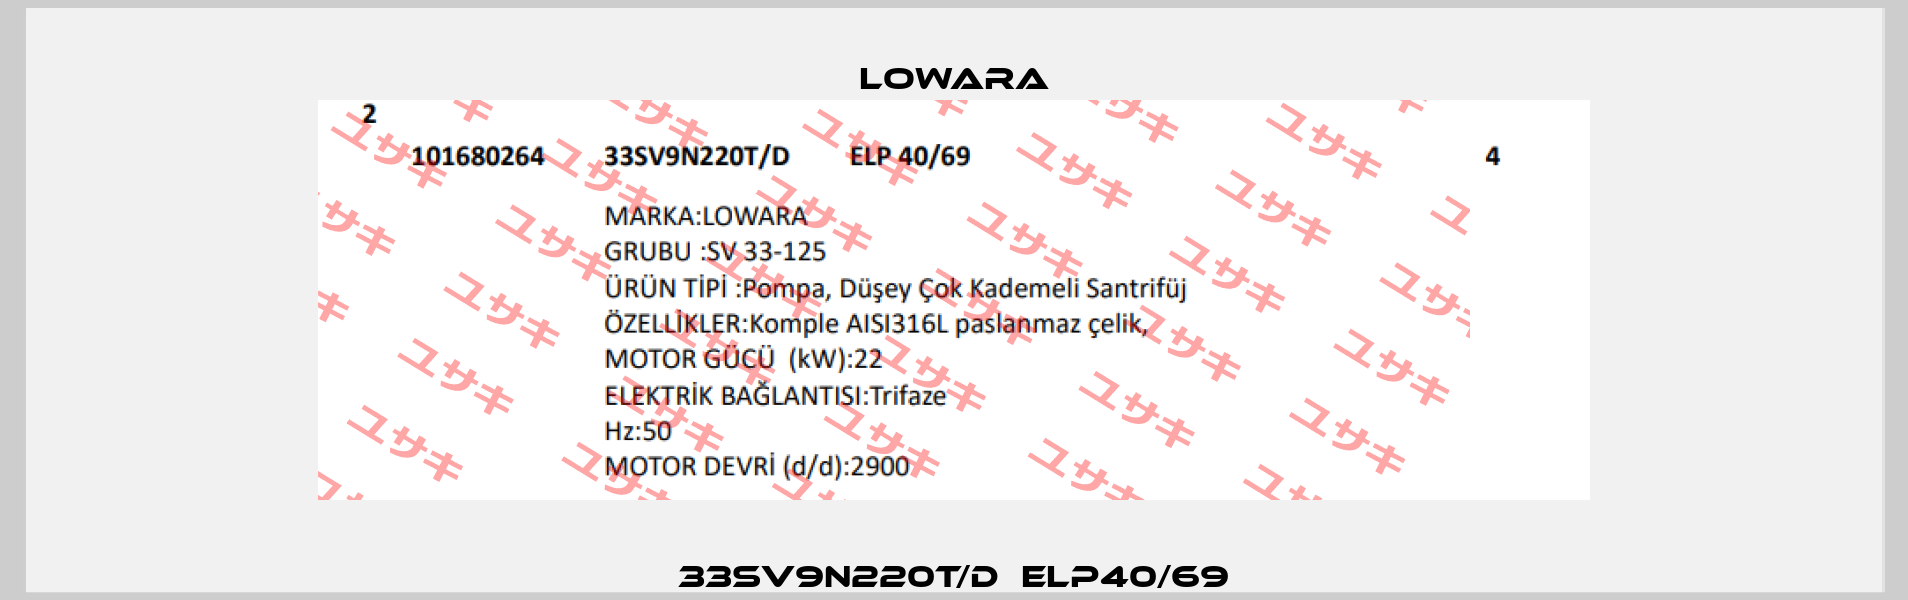 33SV9N220T/D  ELP40/69 Lowara